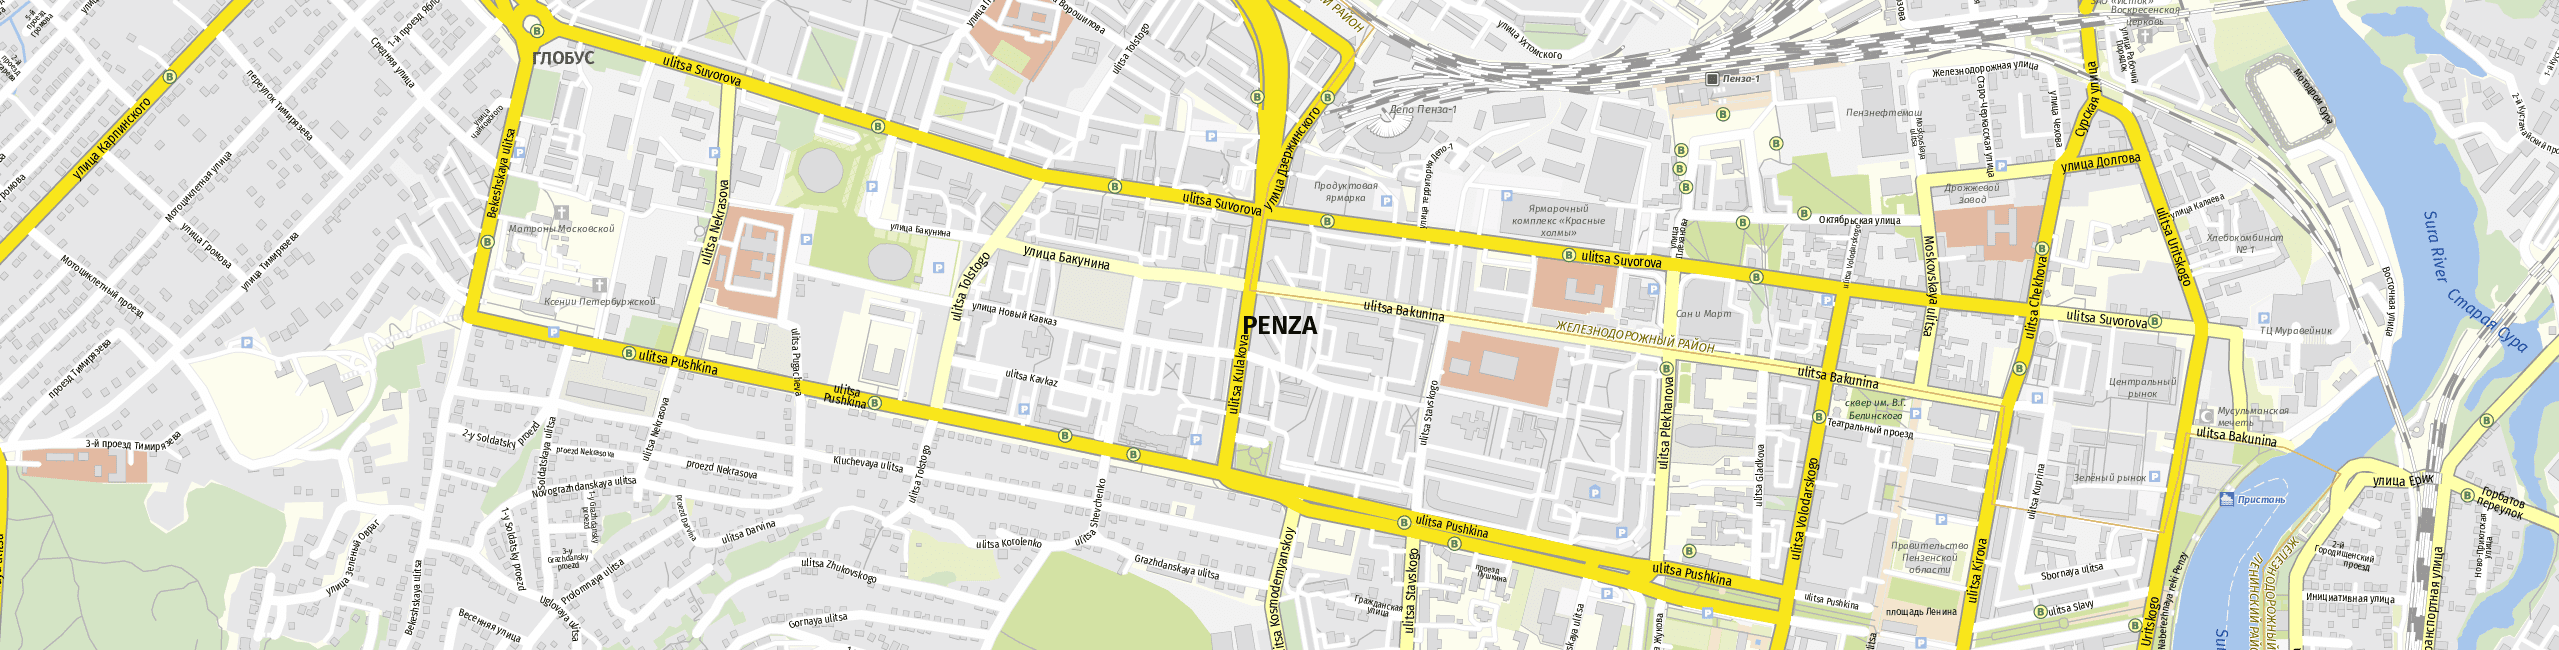 Stadtplan Penza zum Downloaden.